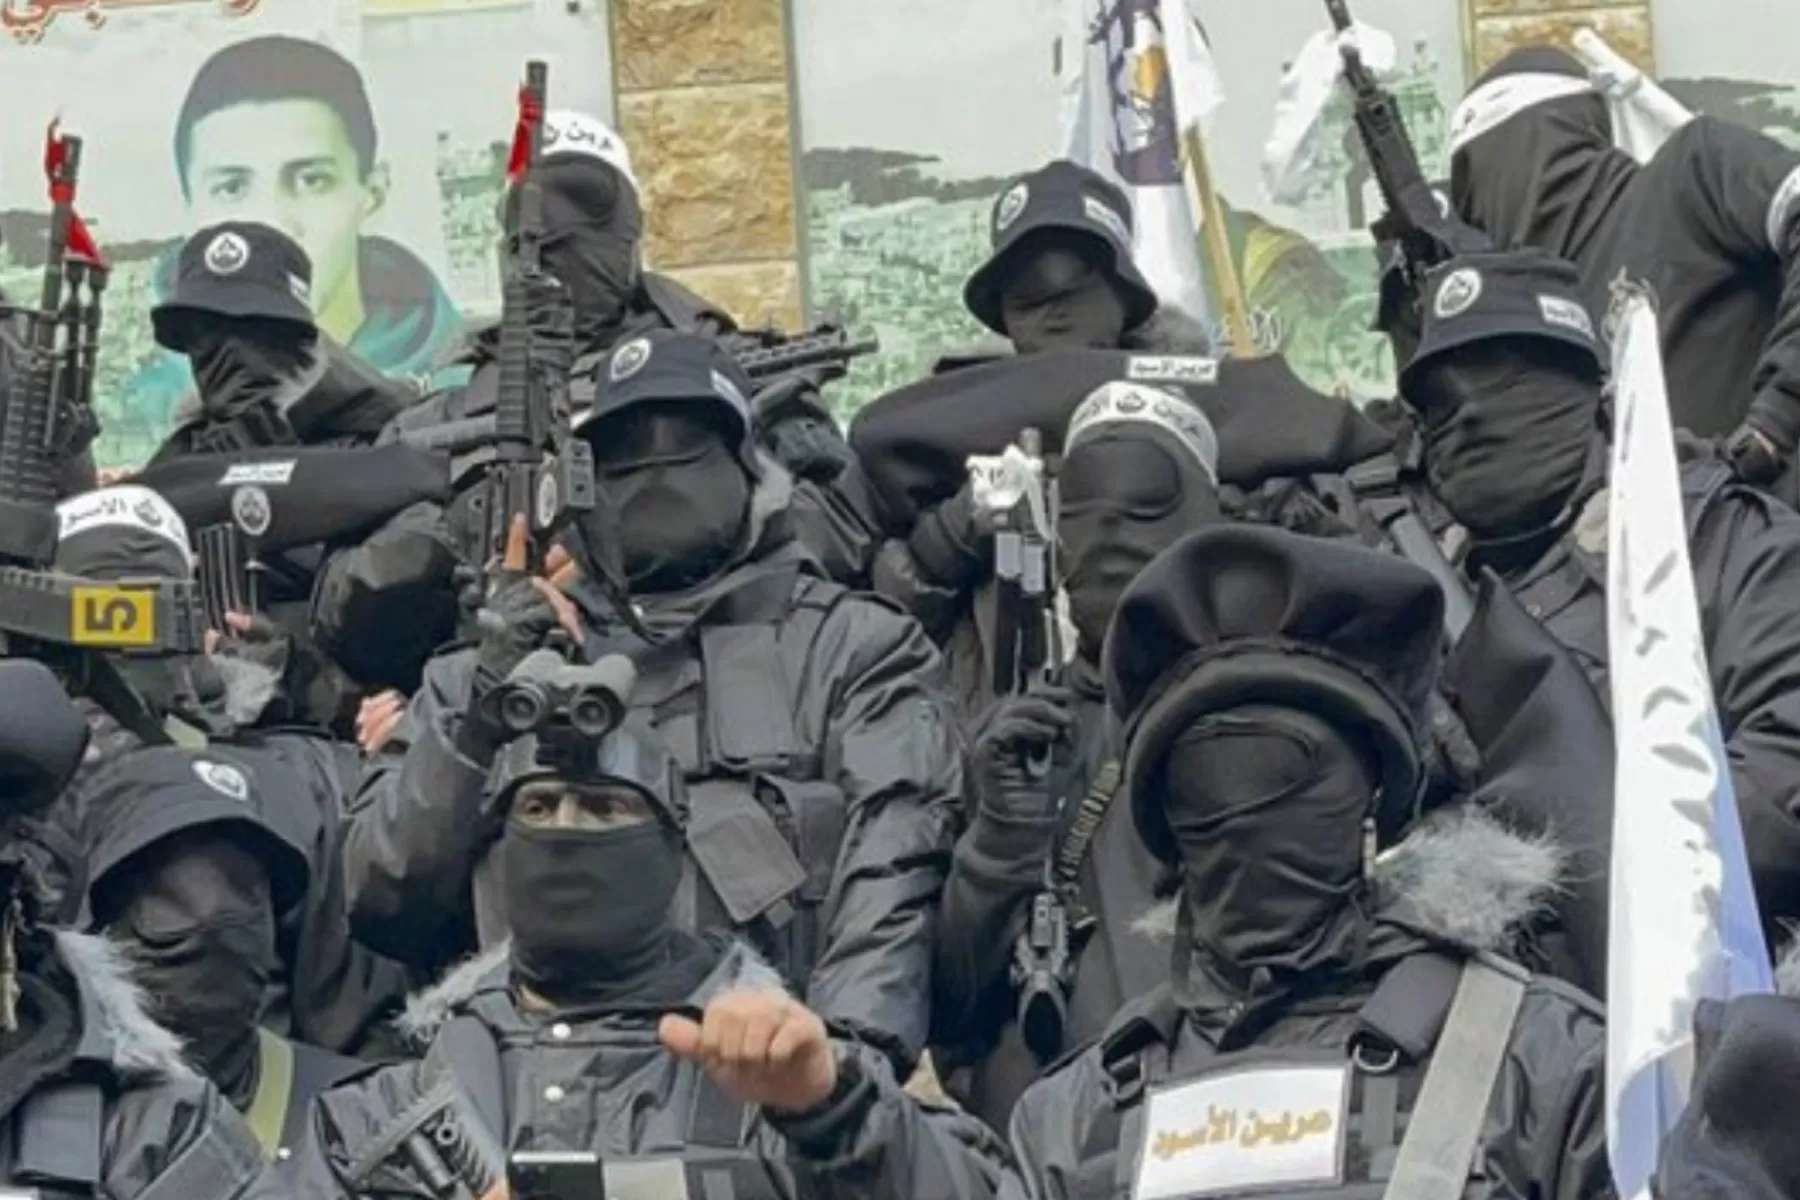 دعت مجموعة "عرين الأسود" الفلسطينية المسلحة في بيان لها، كل المقاومين بالضفة لتنفيذ عمليات إطلاق نار ضد الاحتلال وحددت الساعة 7 مساء، الاثنين، للانطلاق في كل مكان وبنفس الوقت.